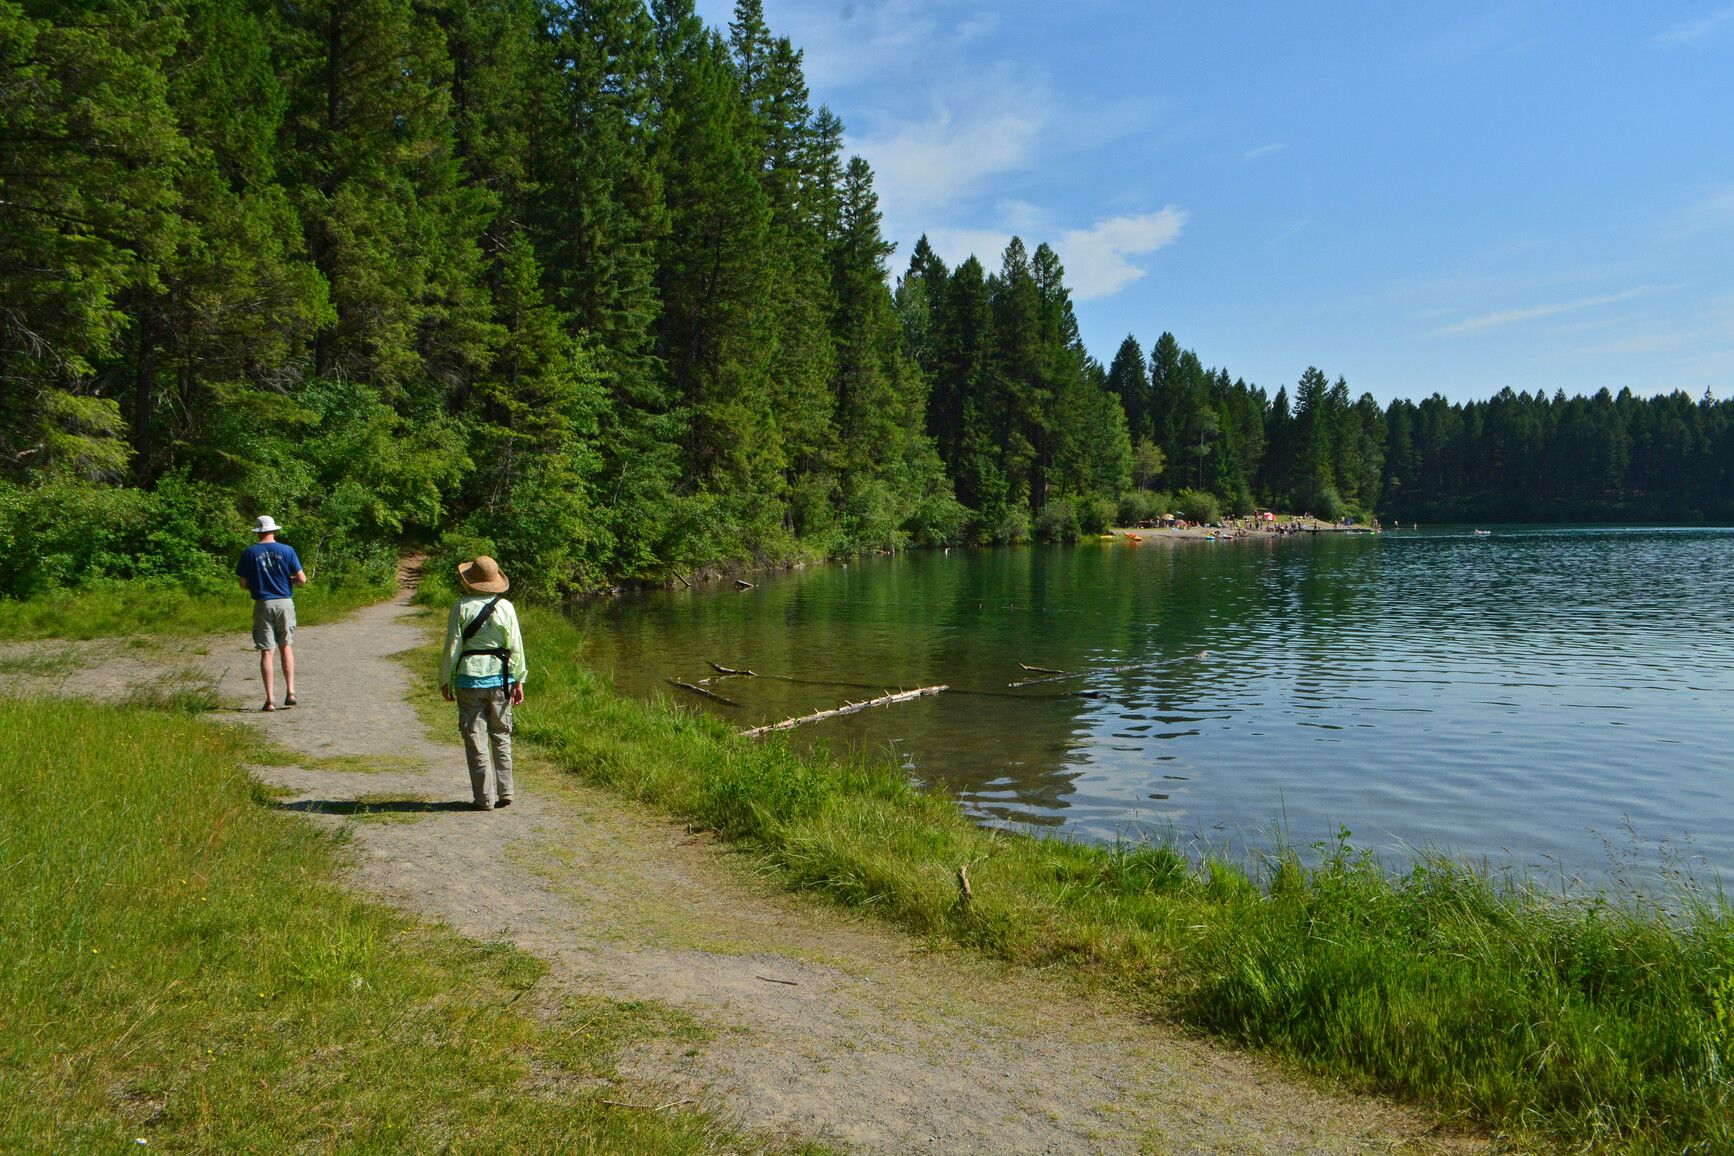 Hikers explore the scenic Surveyors Lake trail at Kikomun Creek Park.